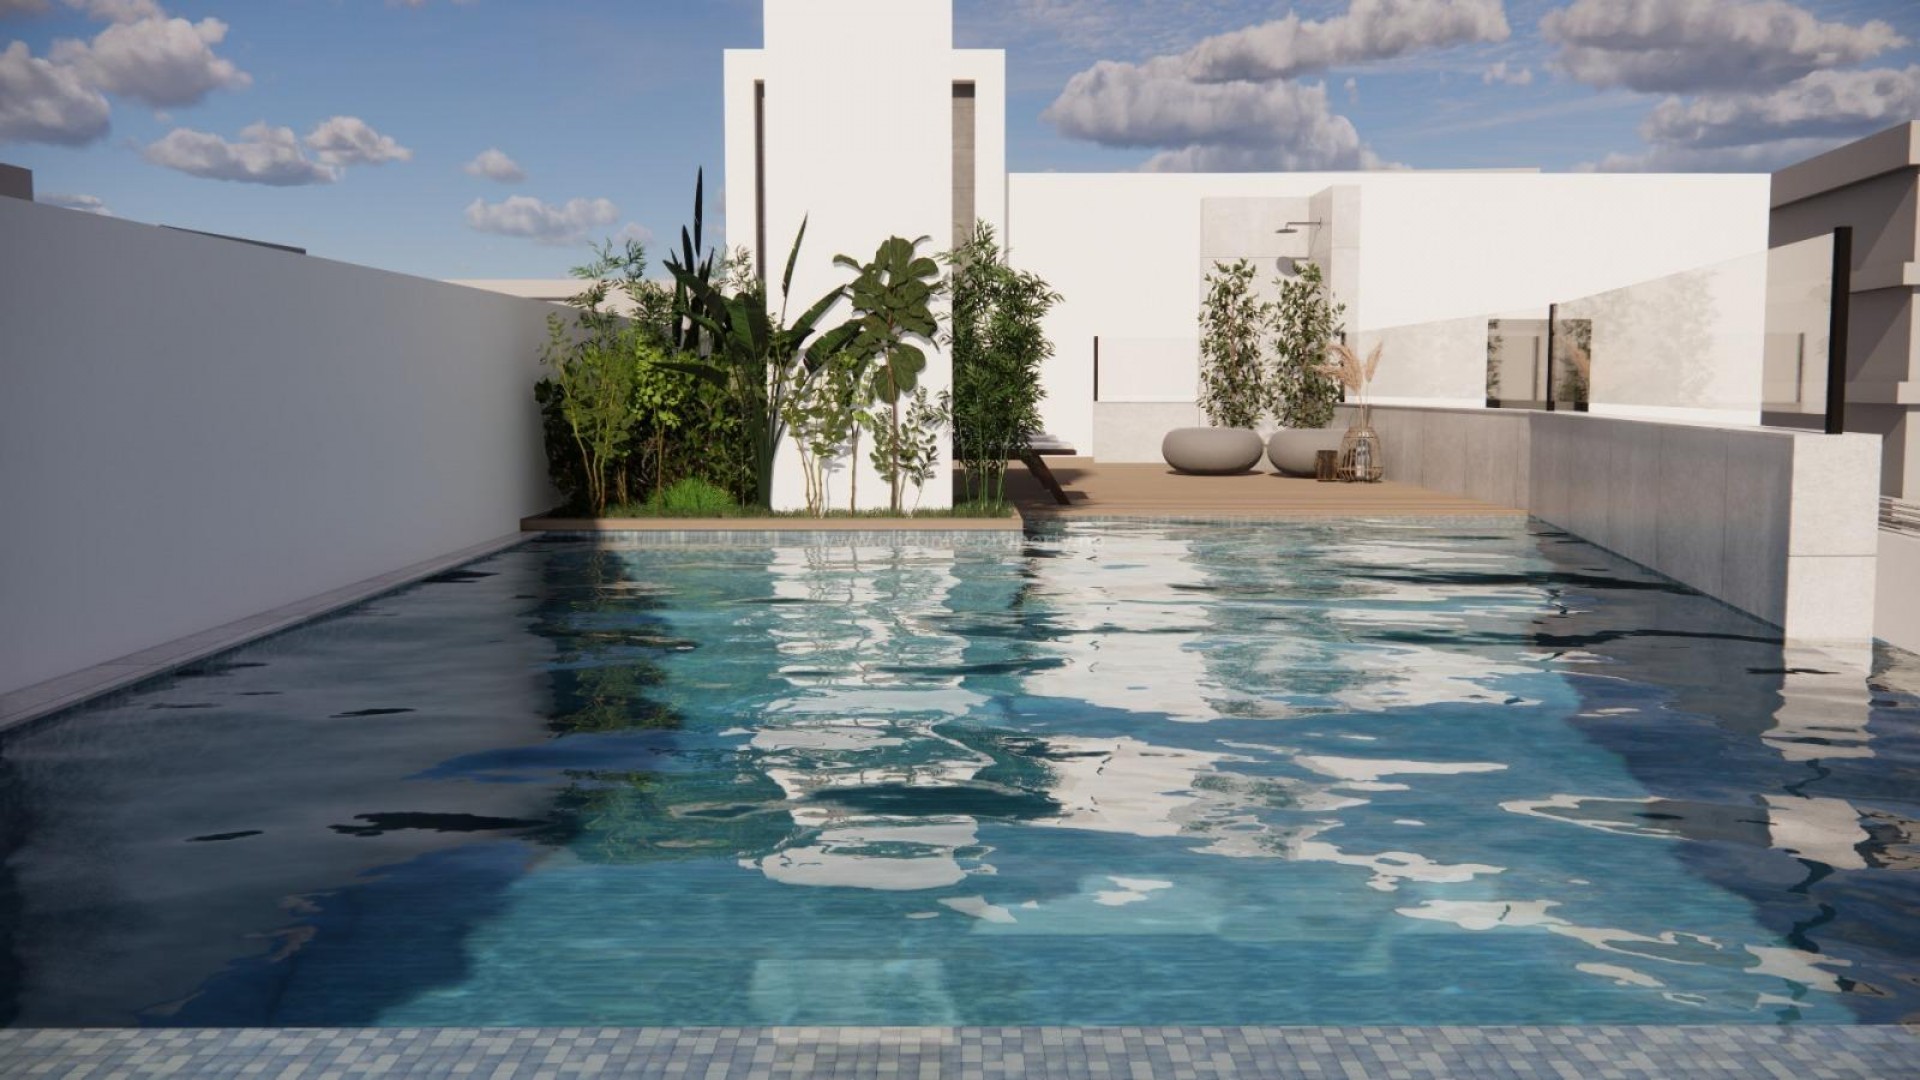 Nye leiligheter i Torrevieja (La Mata), leiligheter/toppleiligheter 2/3 soverom, 2 bad,tilgang til det private bassenget på solterrassen.